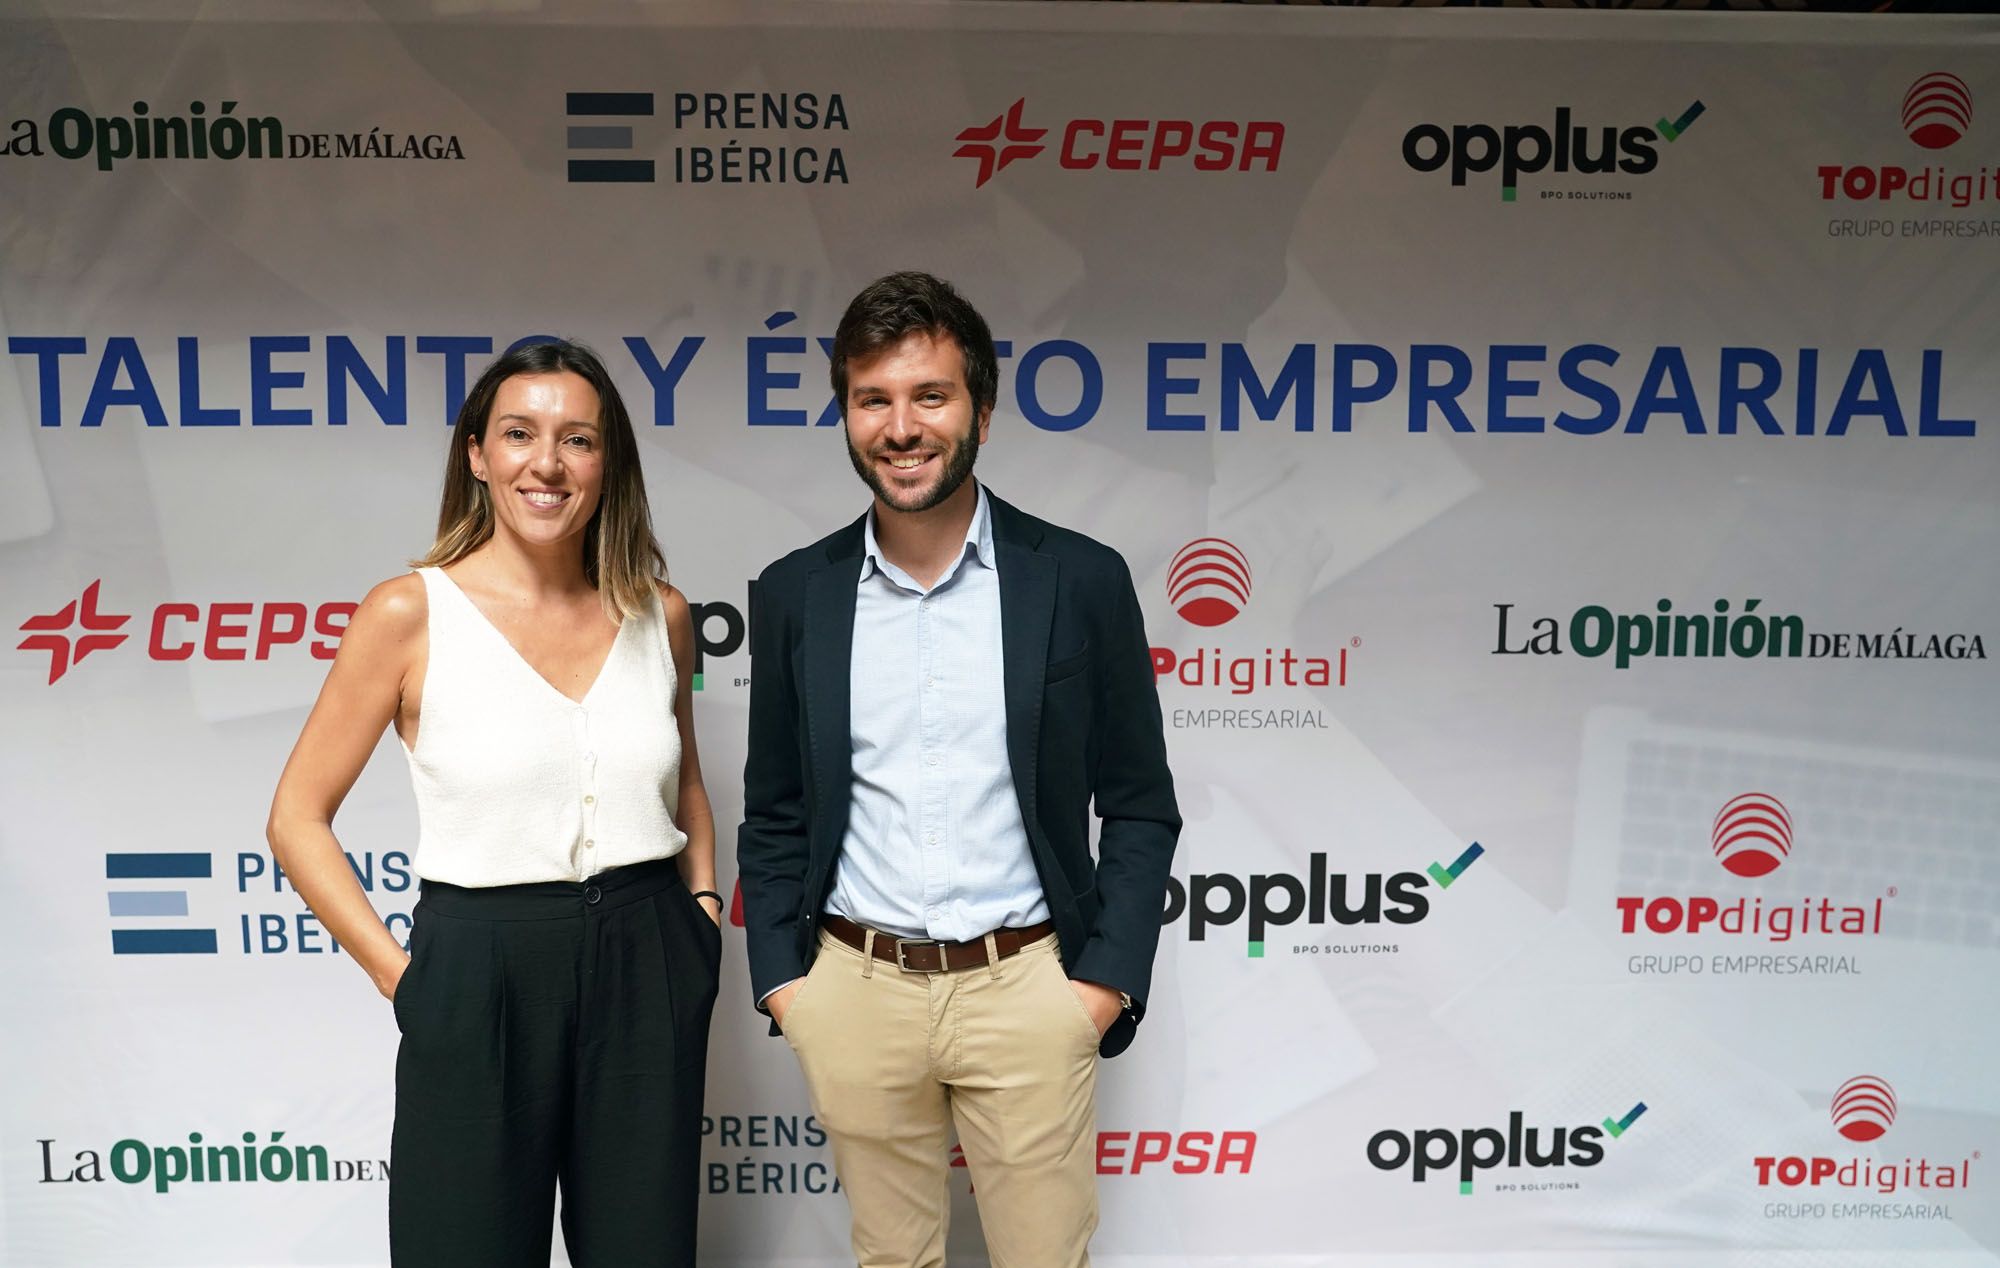 El Foro Talento y Éxito Empresarial organizado por La Opinión de Málaga, en imágenes